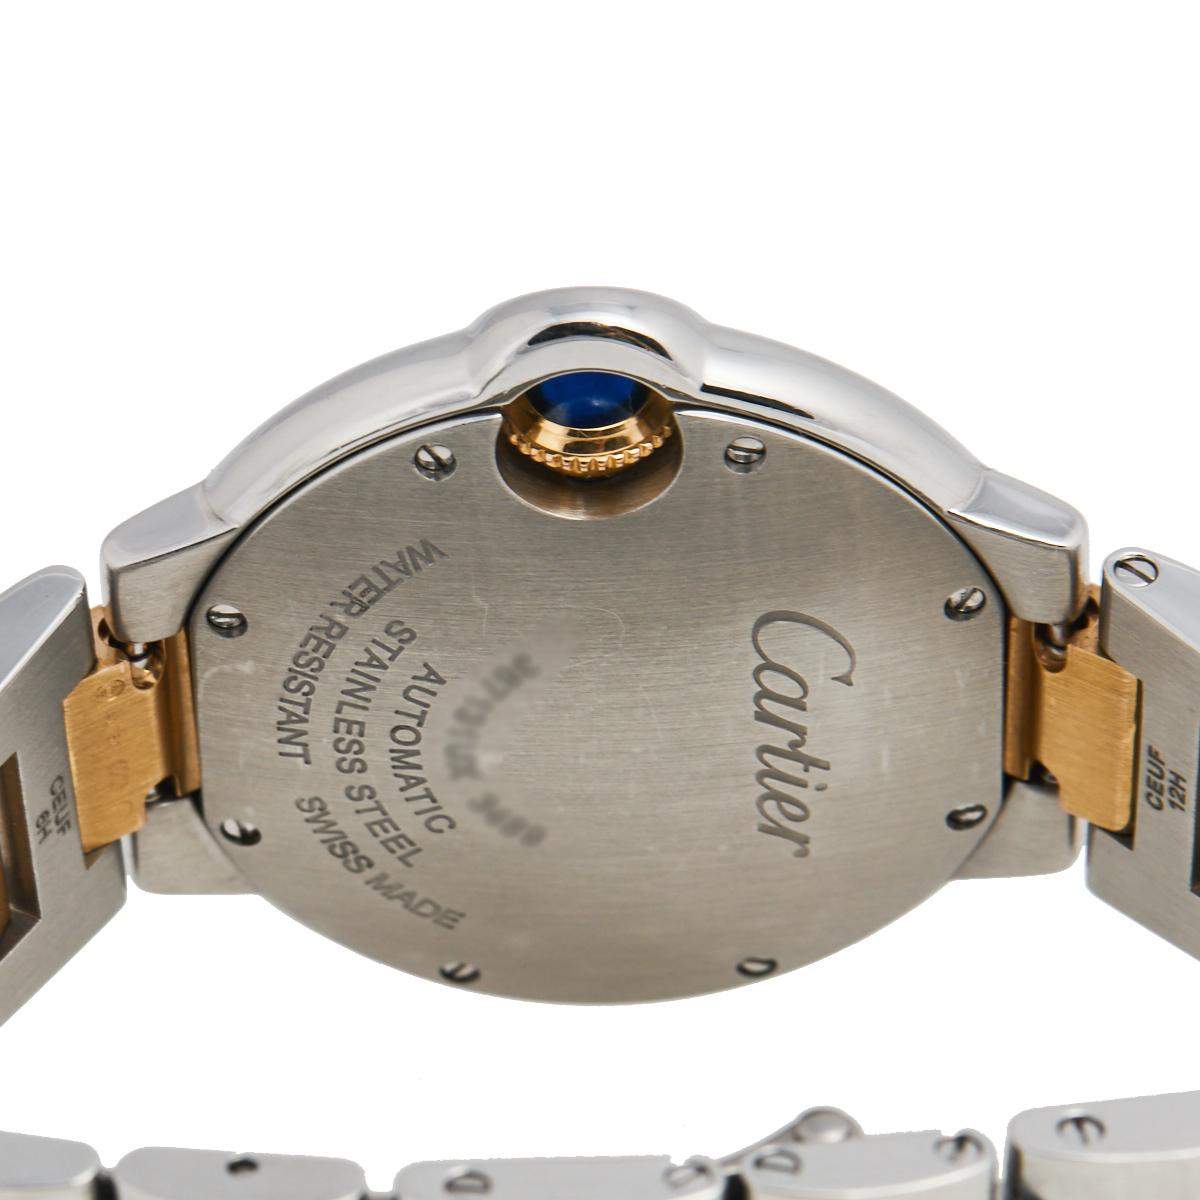 Contemporary Cartier 18k Rose Gold Stainless Diamond Ballon Bleu 3489 Women's Wristwatch 33mm